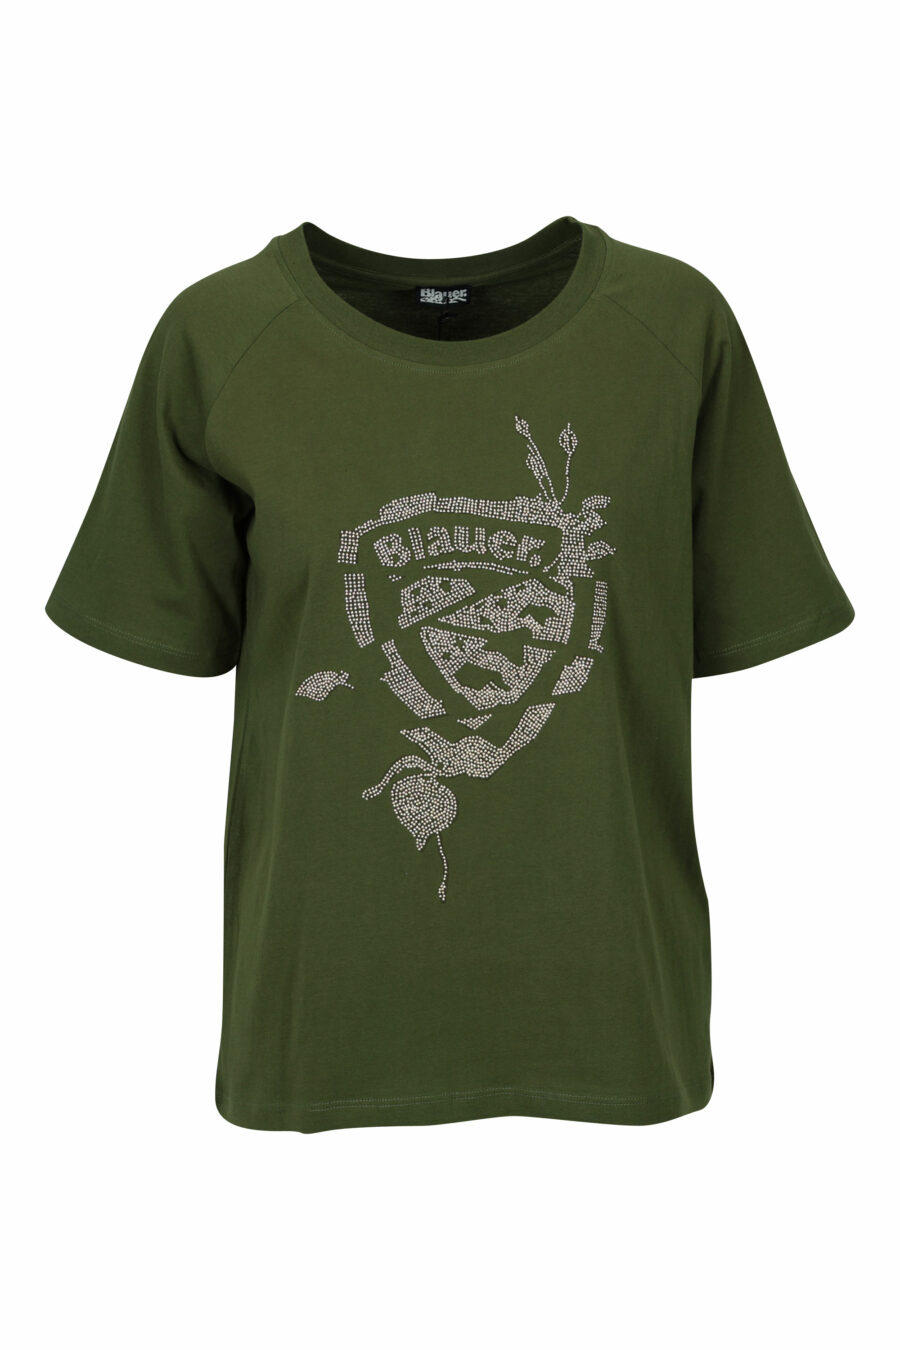 T-shirt verde-militar com patch maxilogo dourado - 8058610852832